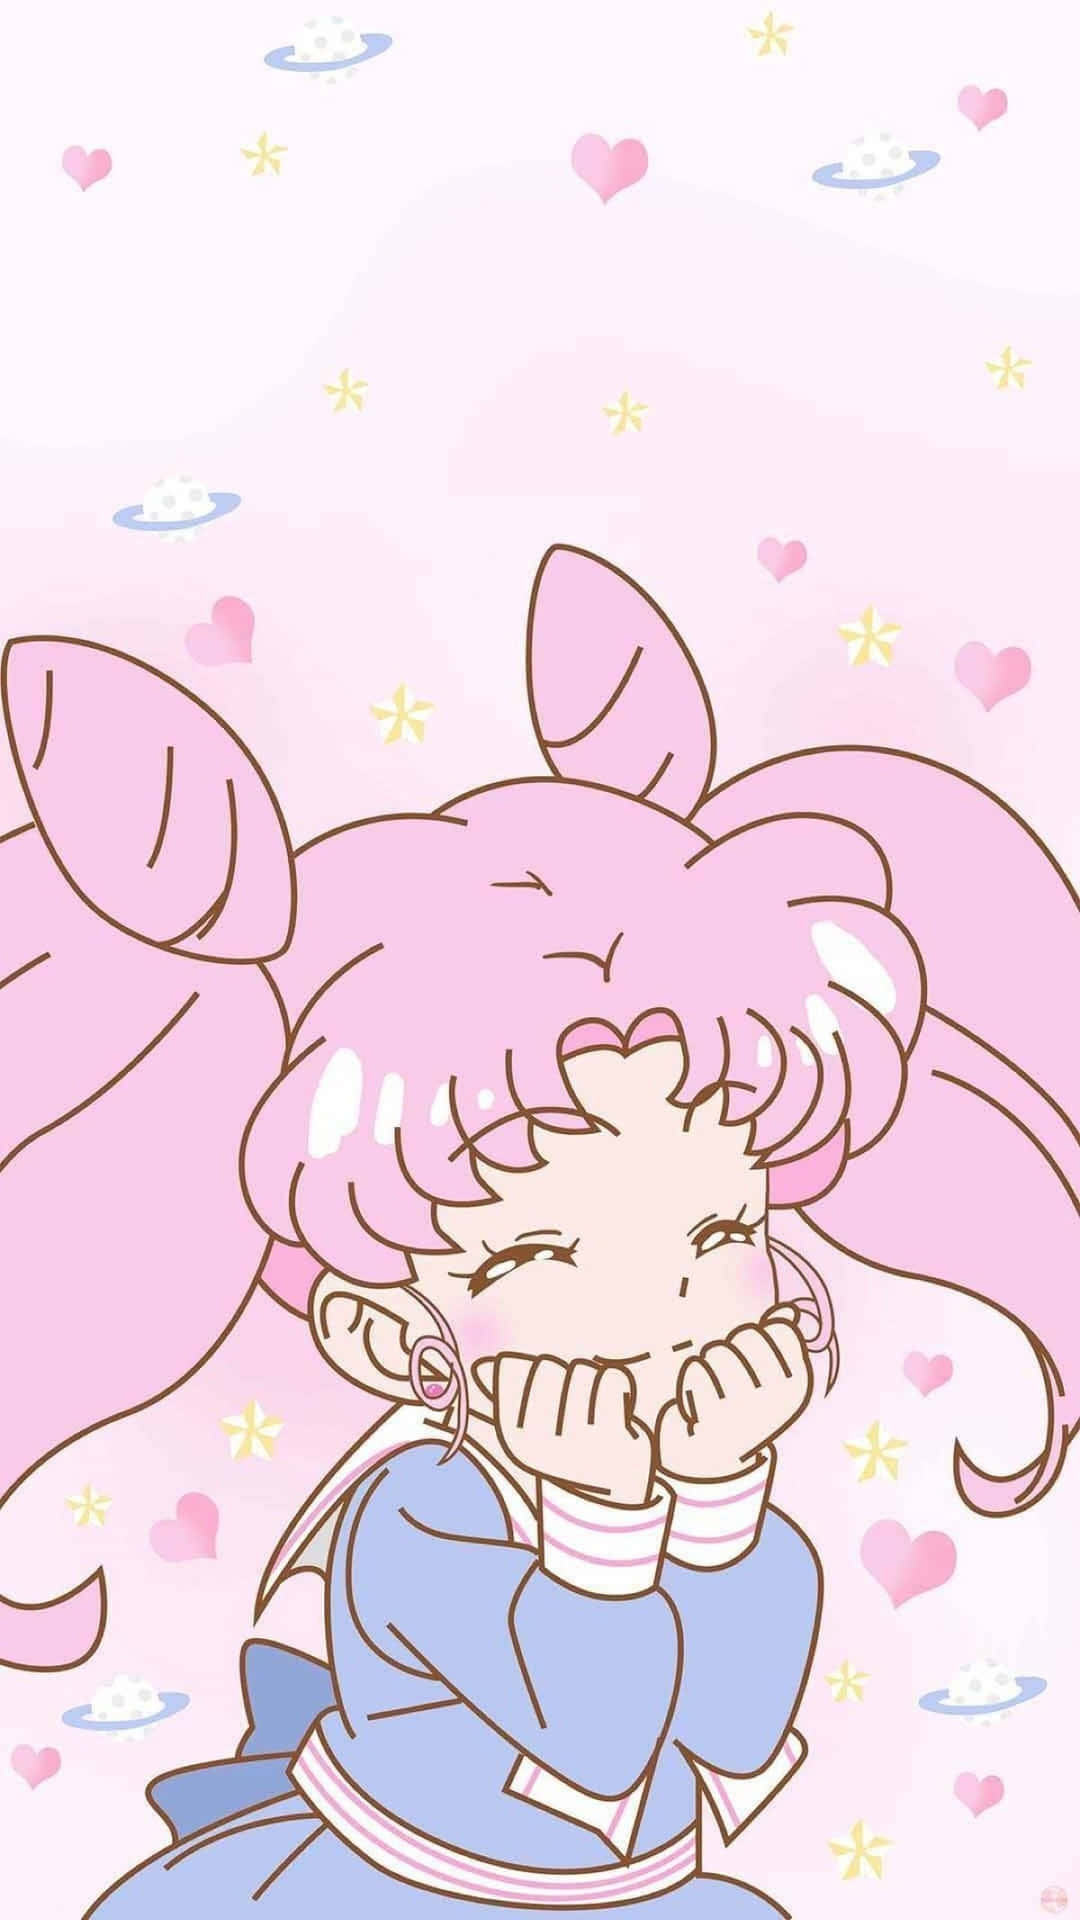 Ilpotere Magico Di Sailor Moon Sfondo